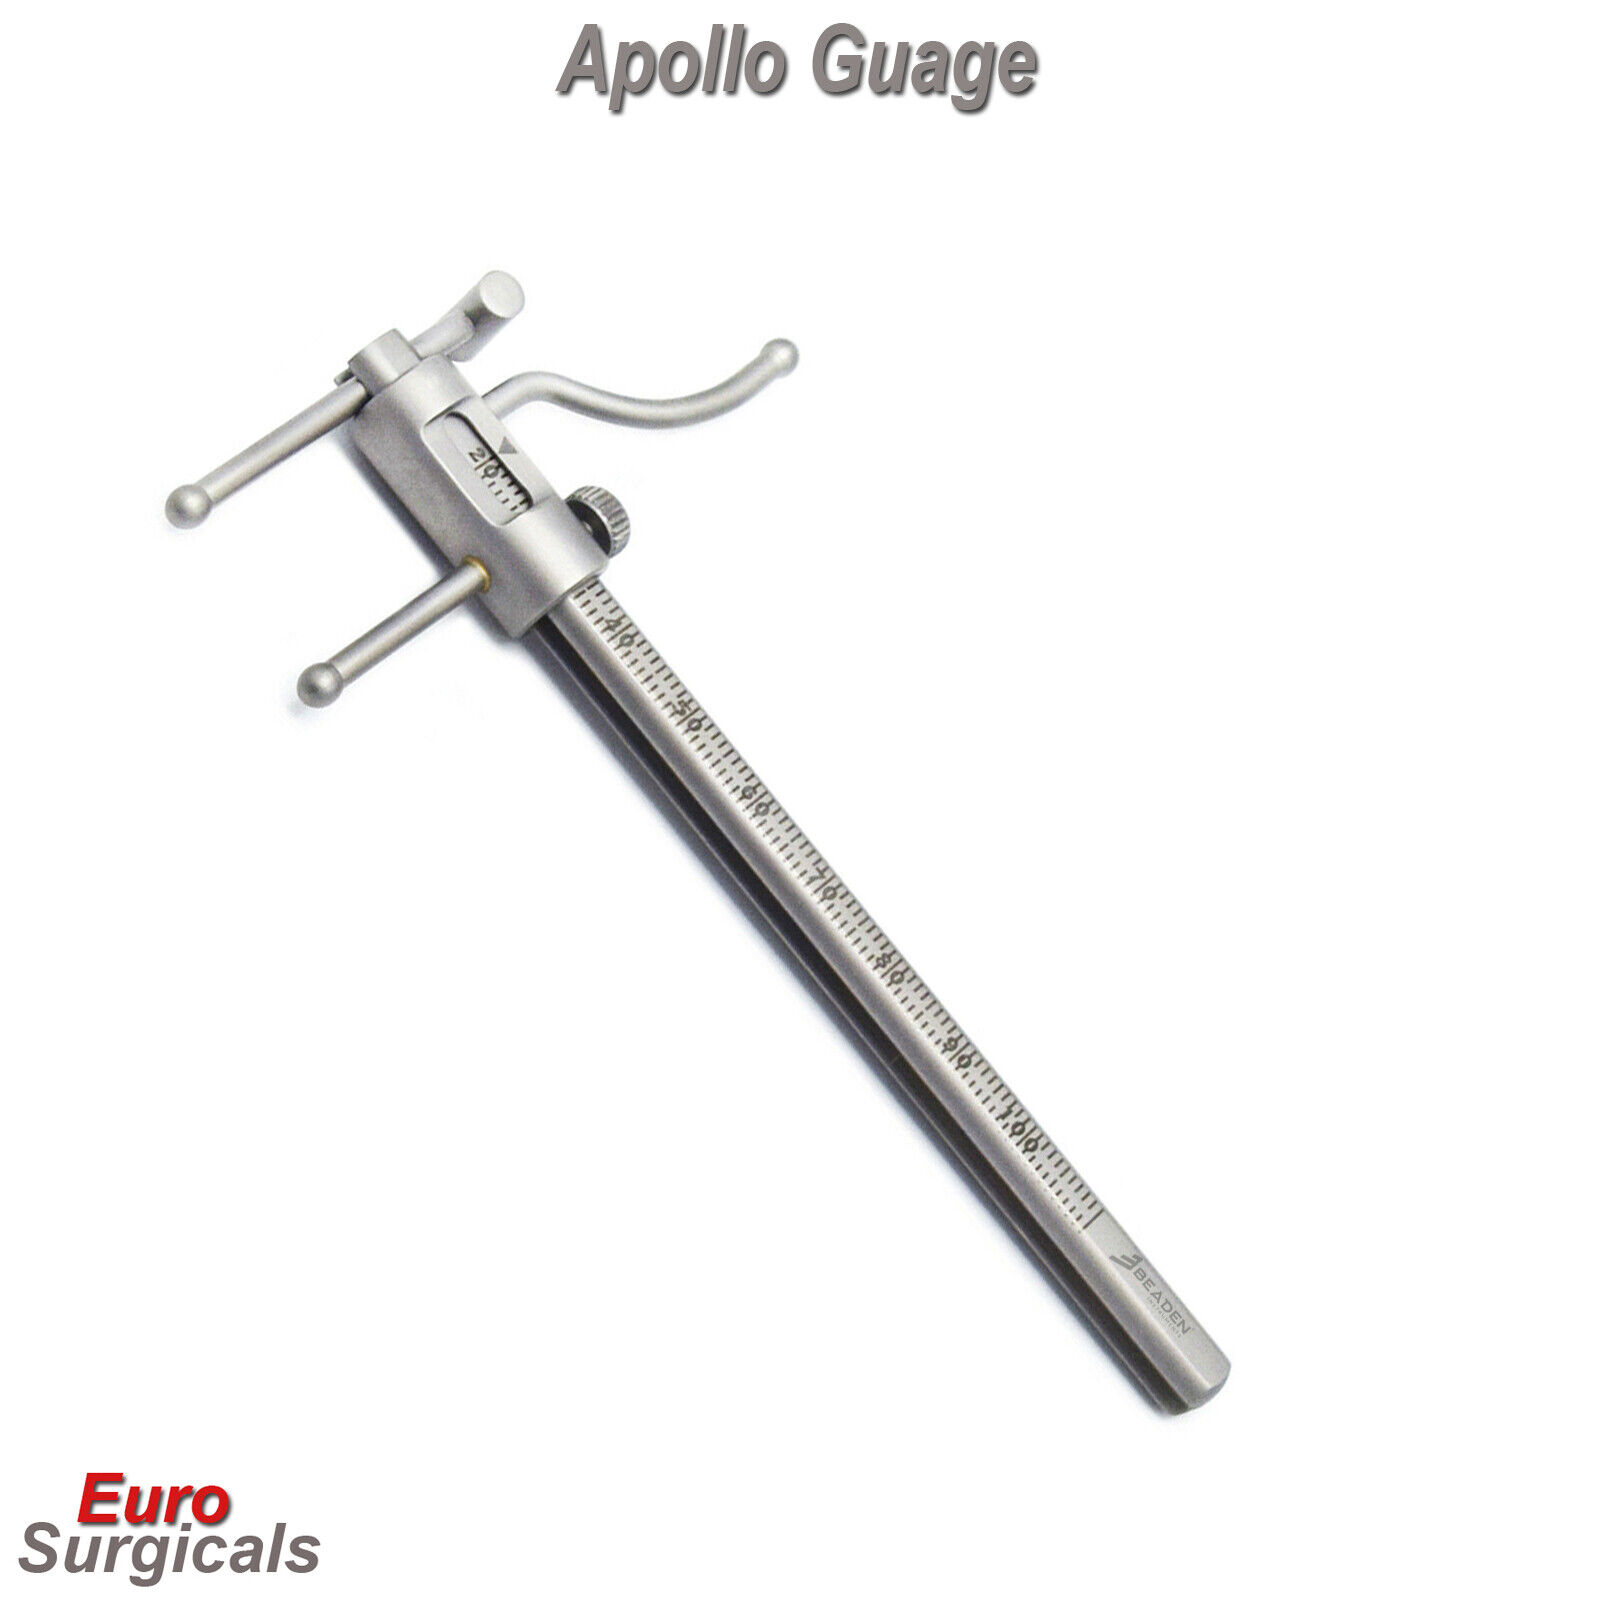 Dental Premium Venus Apollo Ruler Measuring VDO Gauge Implant Hi